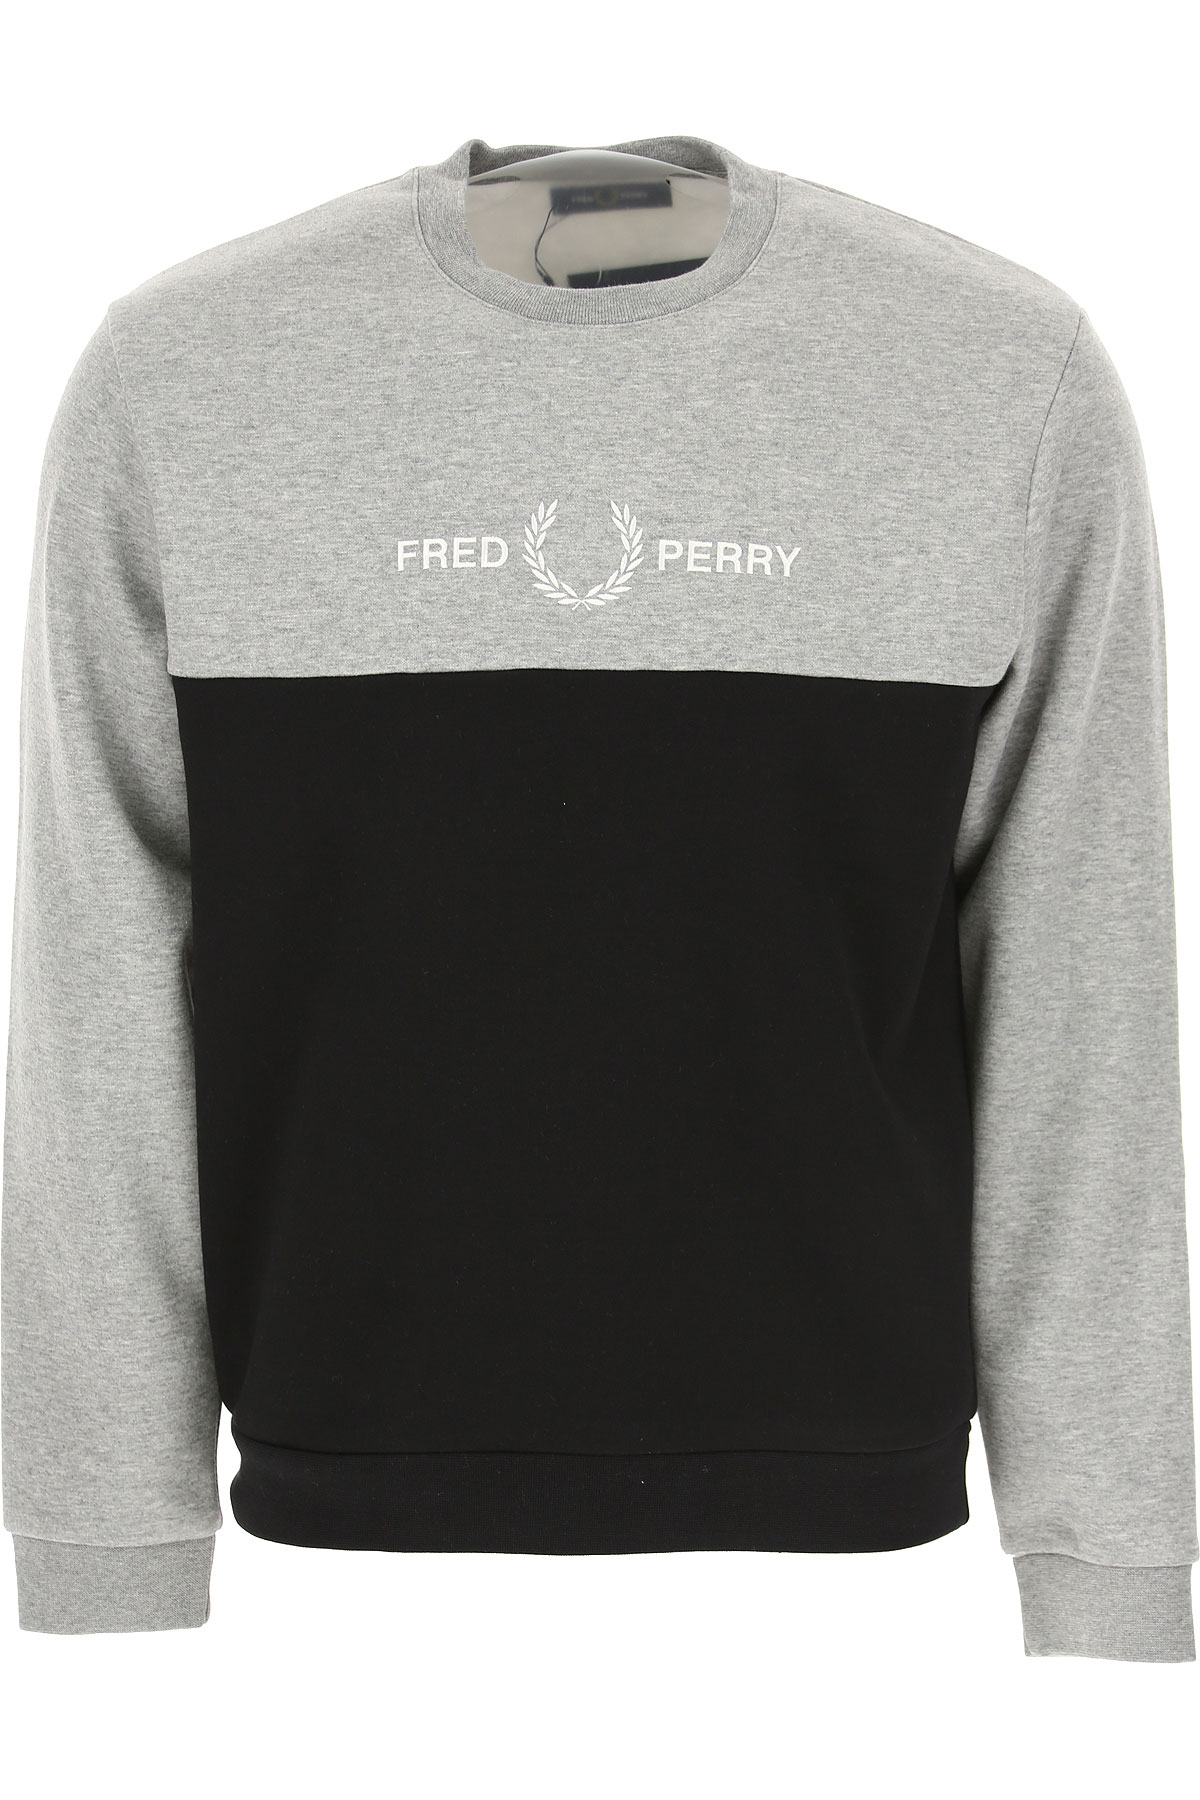 Fred Perry Sweatshirt für Herren, Kapuzenpulli, Hoodie, Sweats Günstig im Sale, Grau, Polyester, 2017, L M S XL